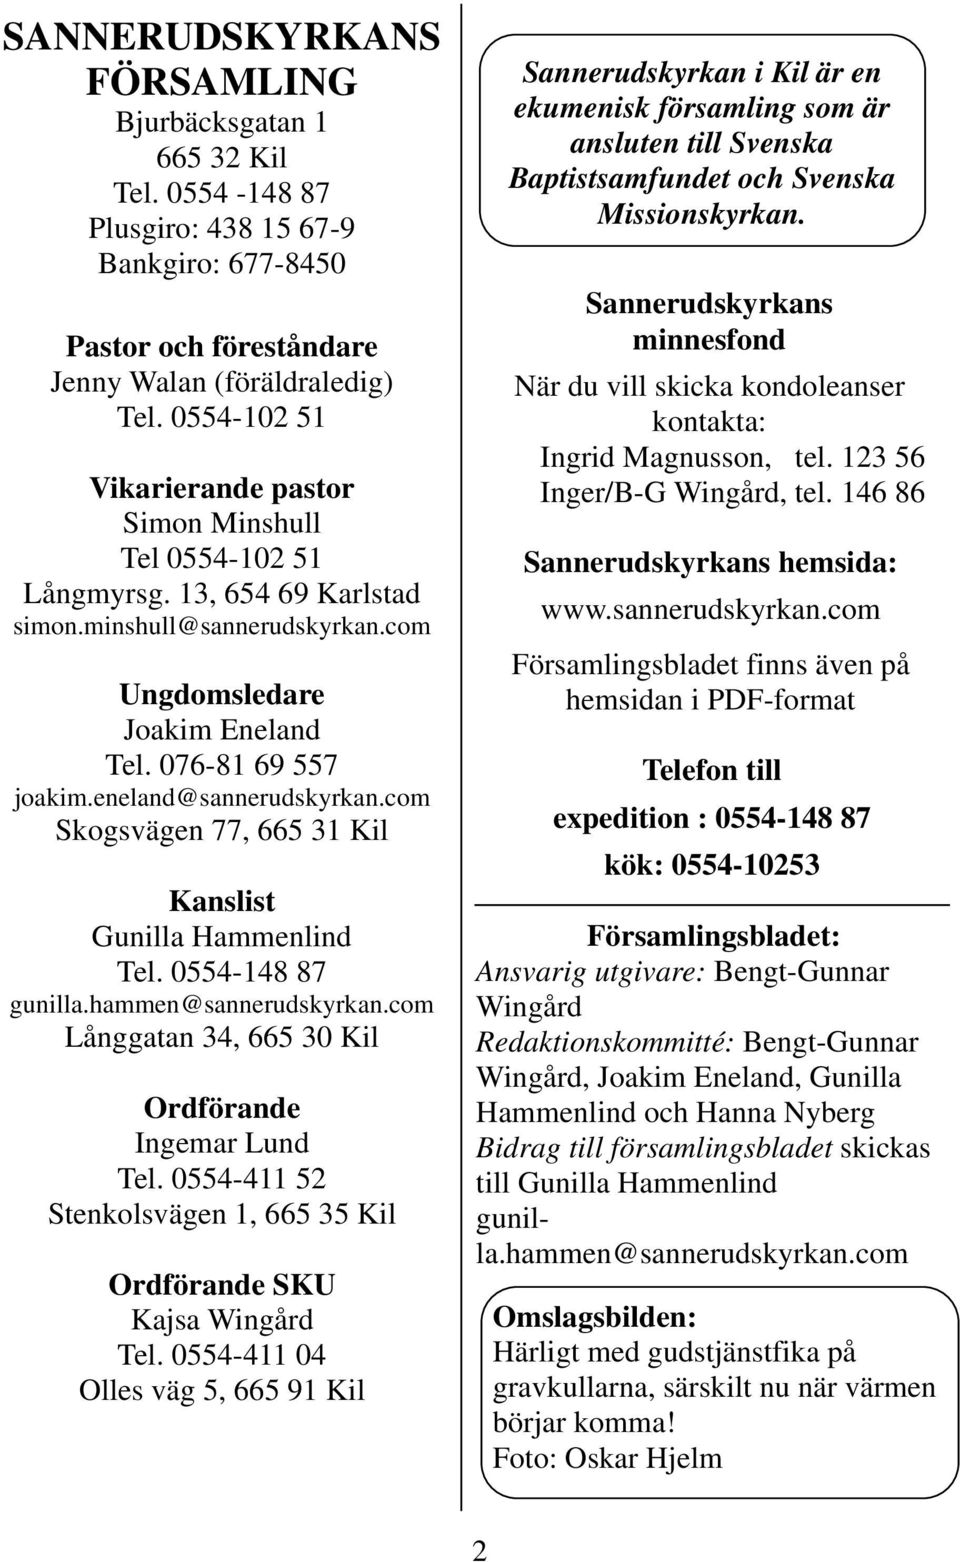 eneland@sannerudskyrkan.com Skogsvägen 77, 665 31 Kil Kanslist Gunilla Hammenlind Tel. 0554-148 87 gunilla.hammen@sannerudskyrkan.com Långgatan 34, 665 30 Kil Ordförande Ingemar Lund Tel.